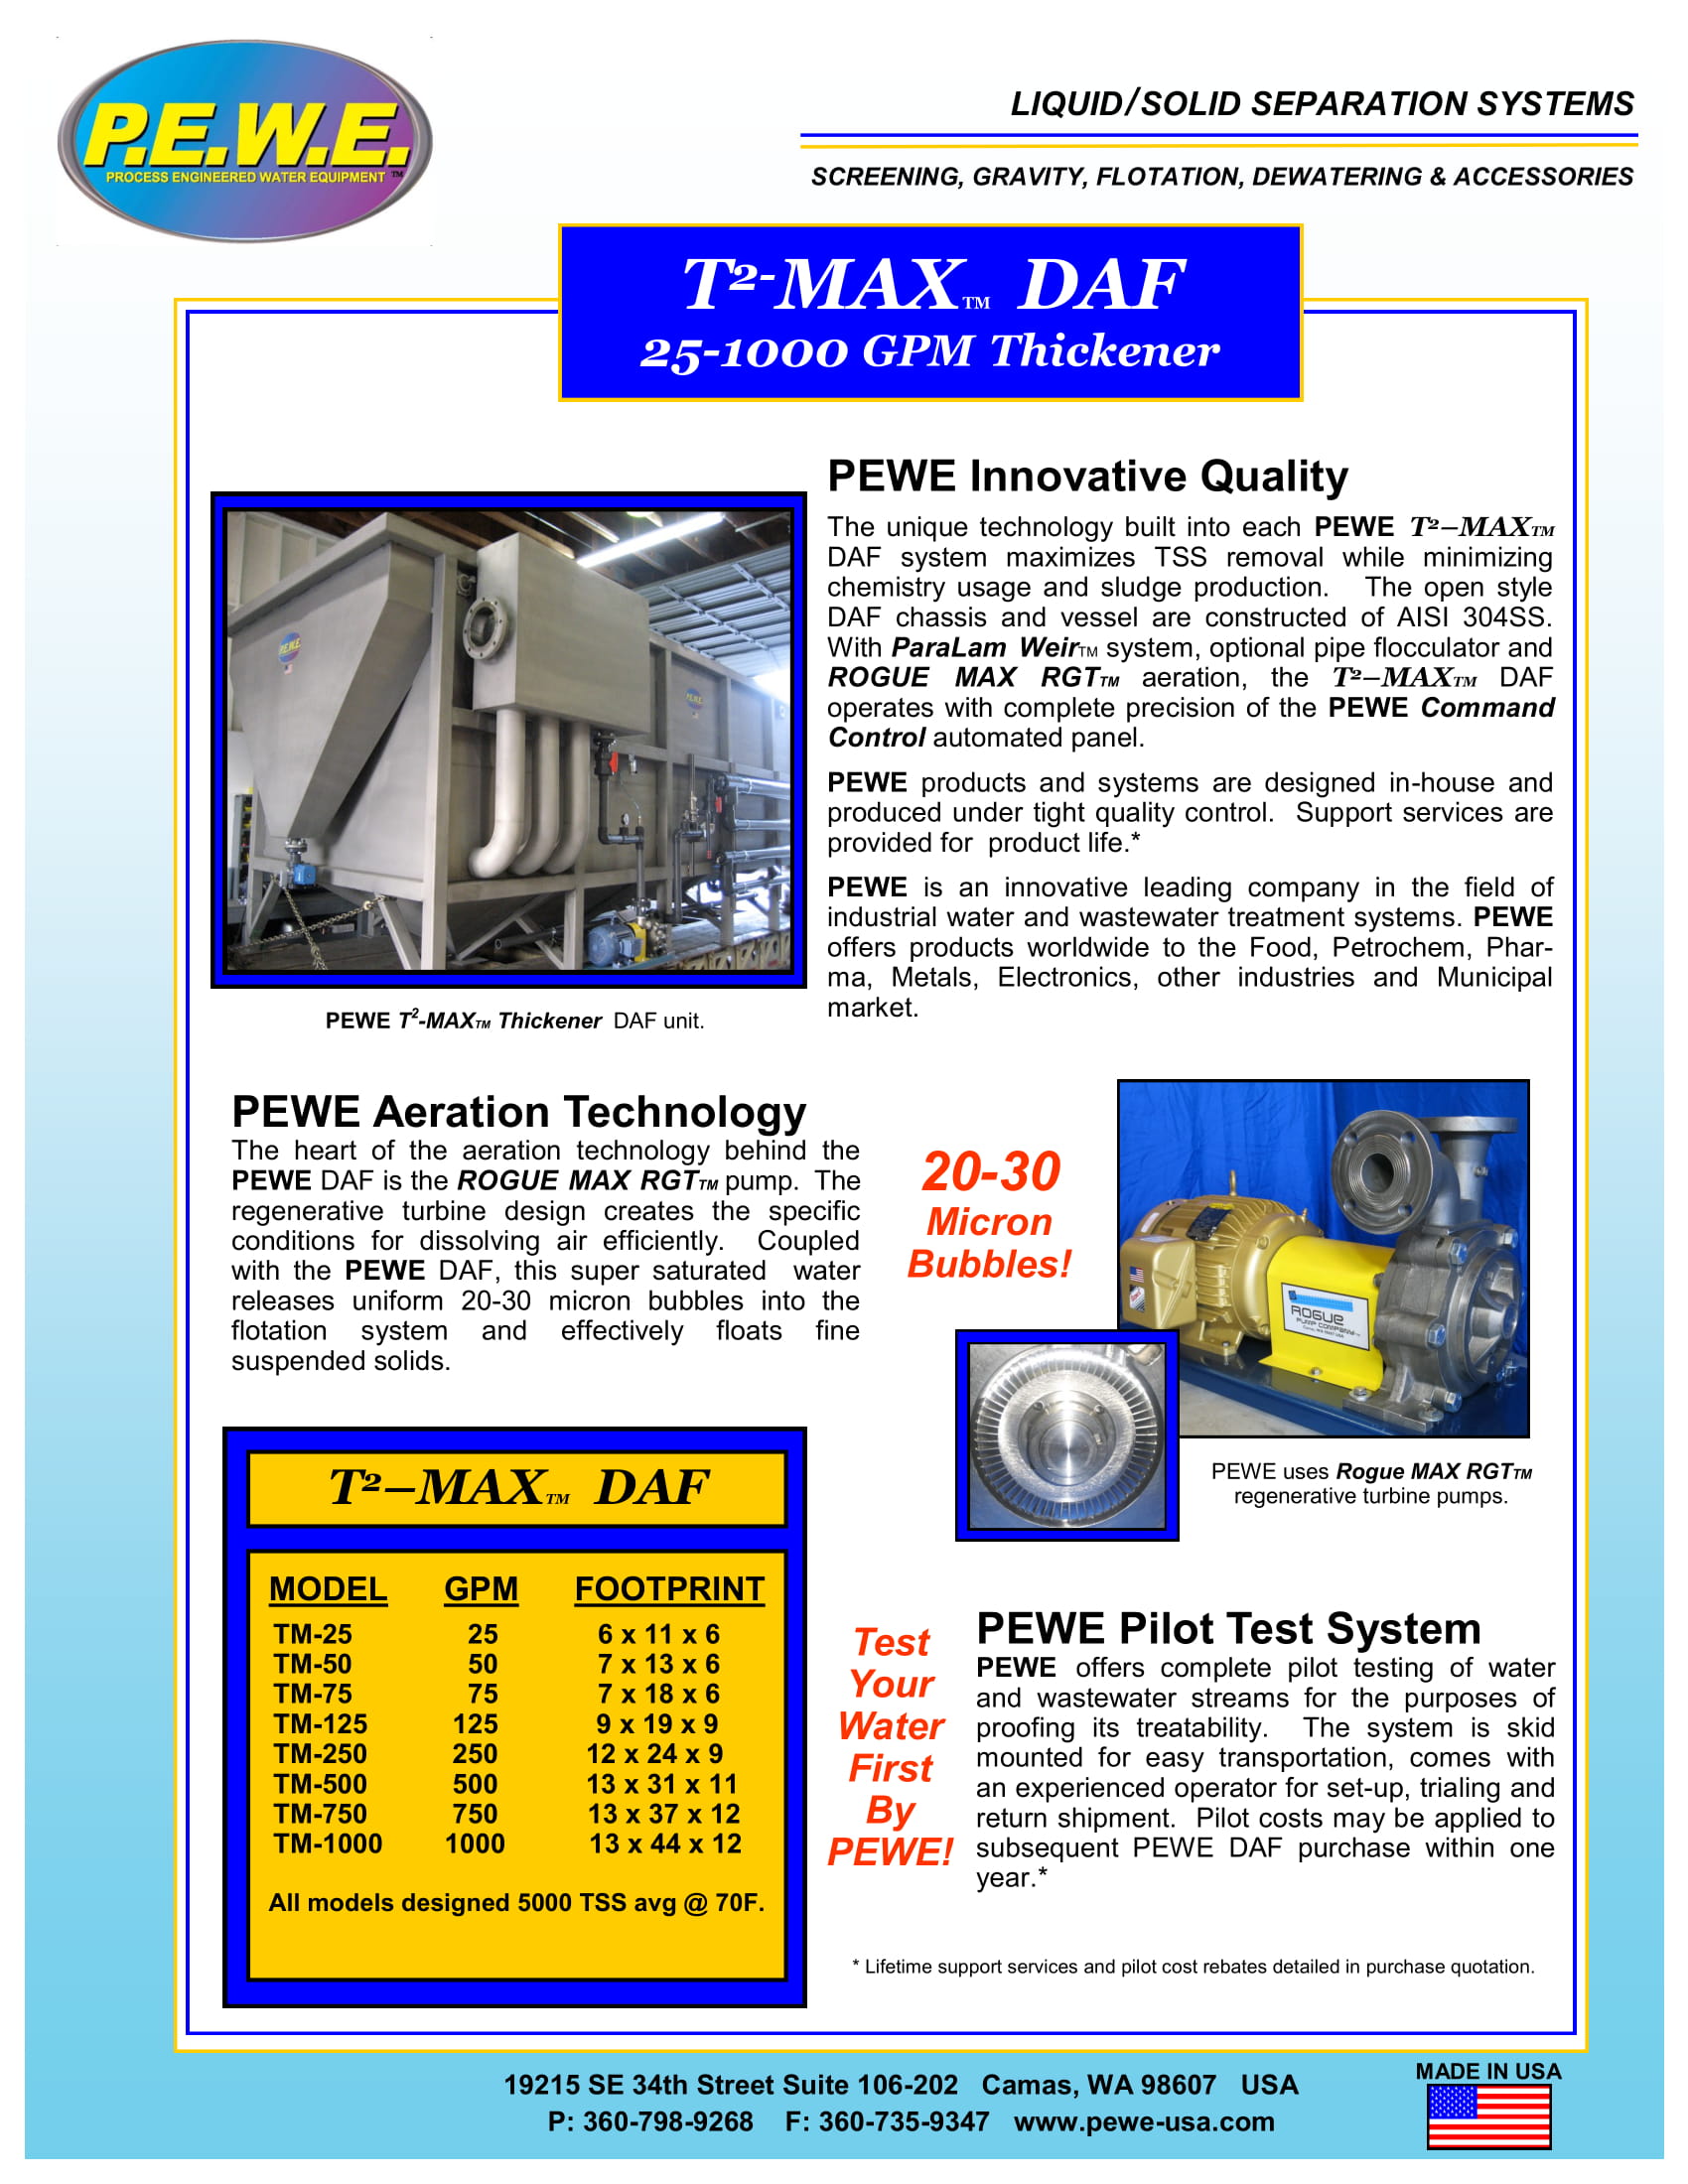 PEWE-T-MAX-DAF-Brochure-031419-1.jpg